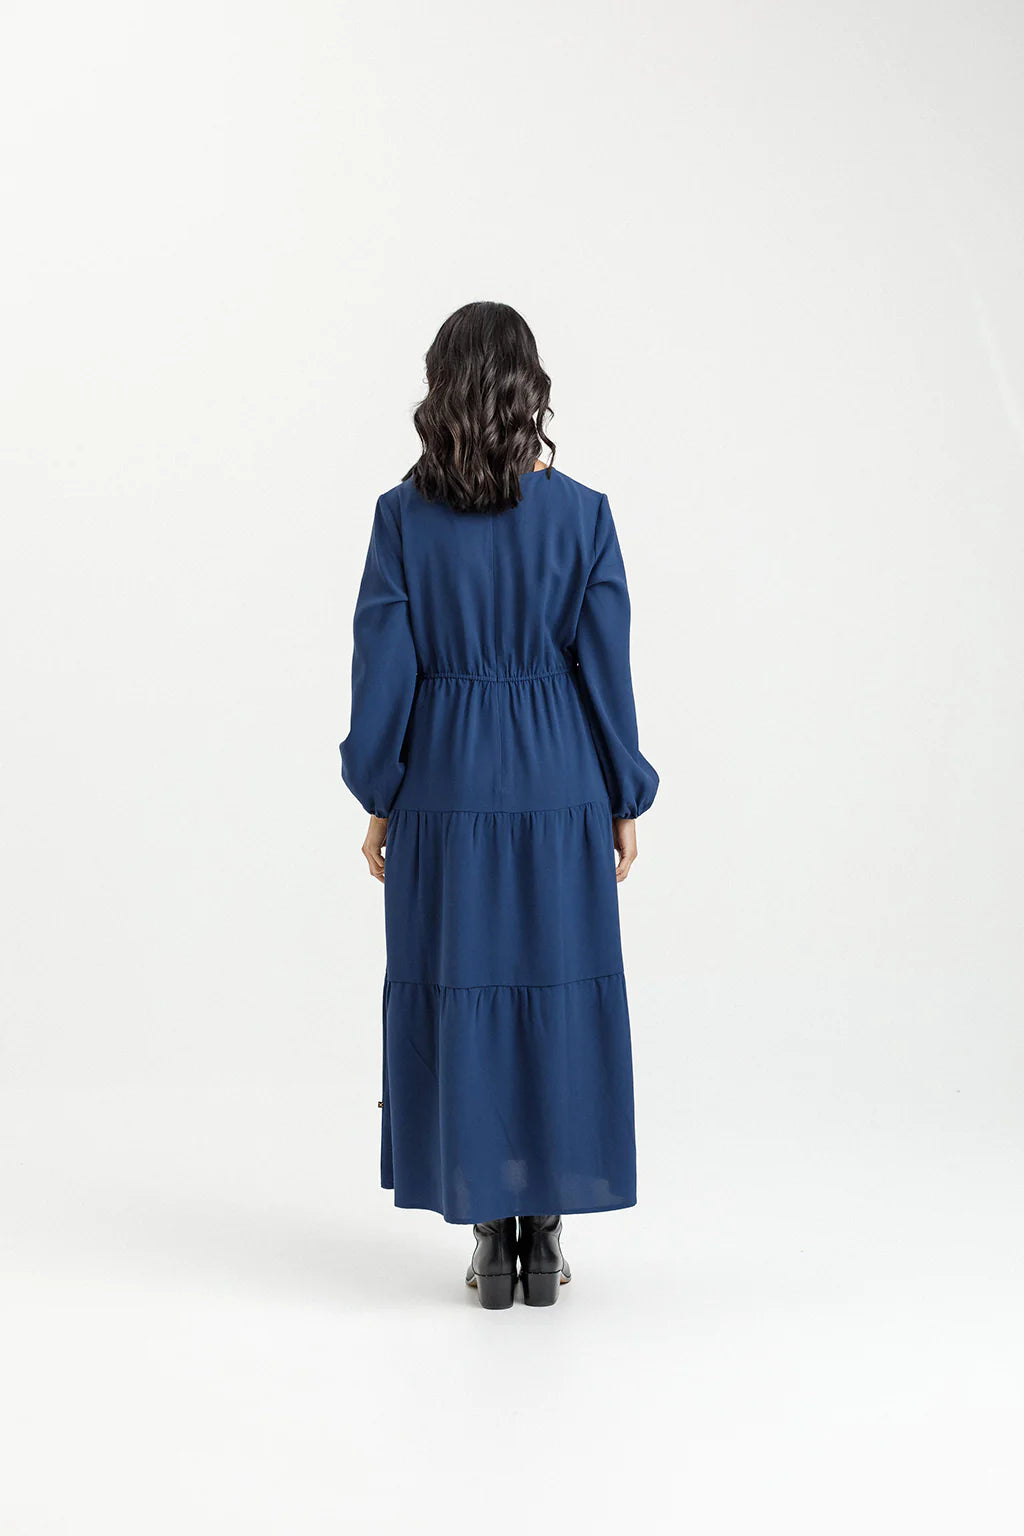 Homelee | Flora Dress - Indigo Blue